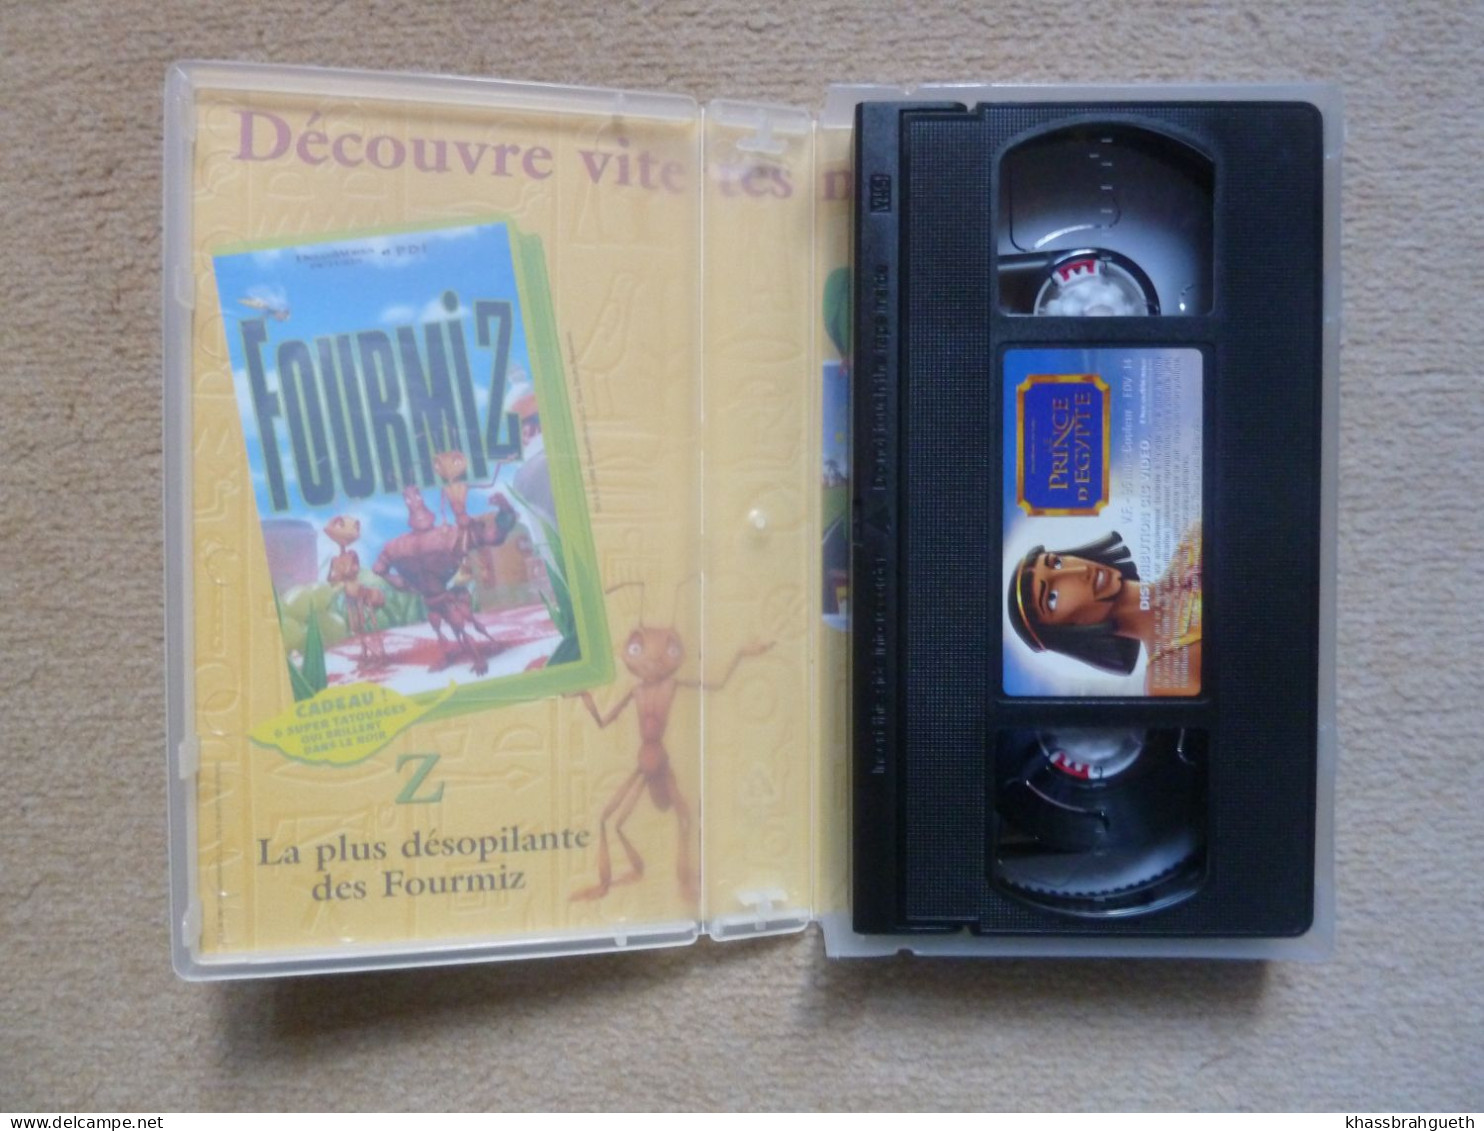 PRINCE D'EGYPTE (CASSETTE VHS) - DREAMWORKS PICTURES 1999 - Dessins Animés